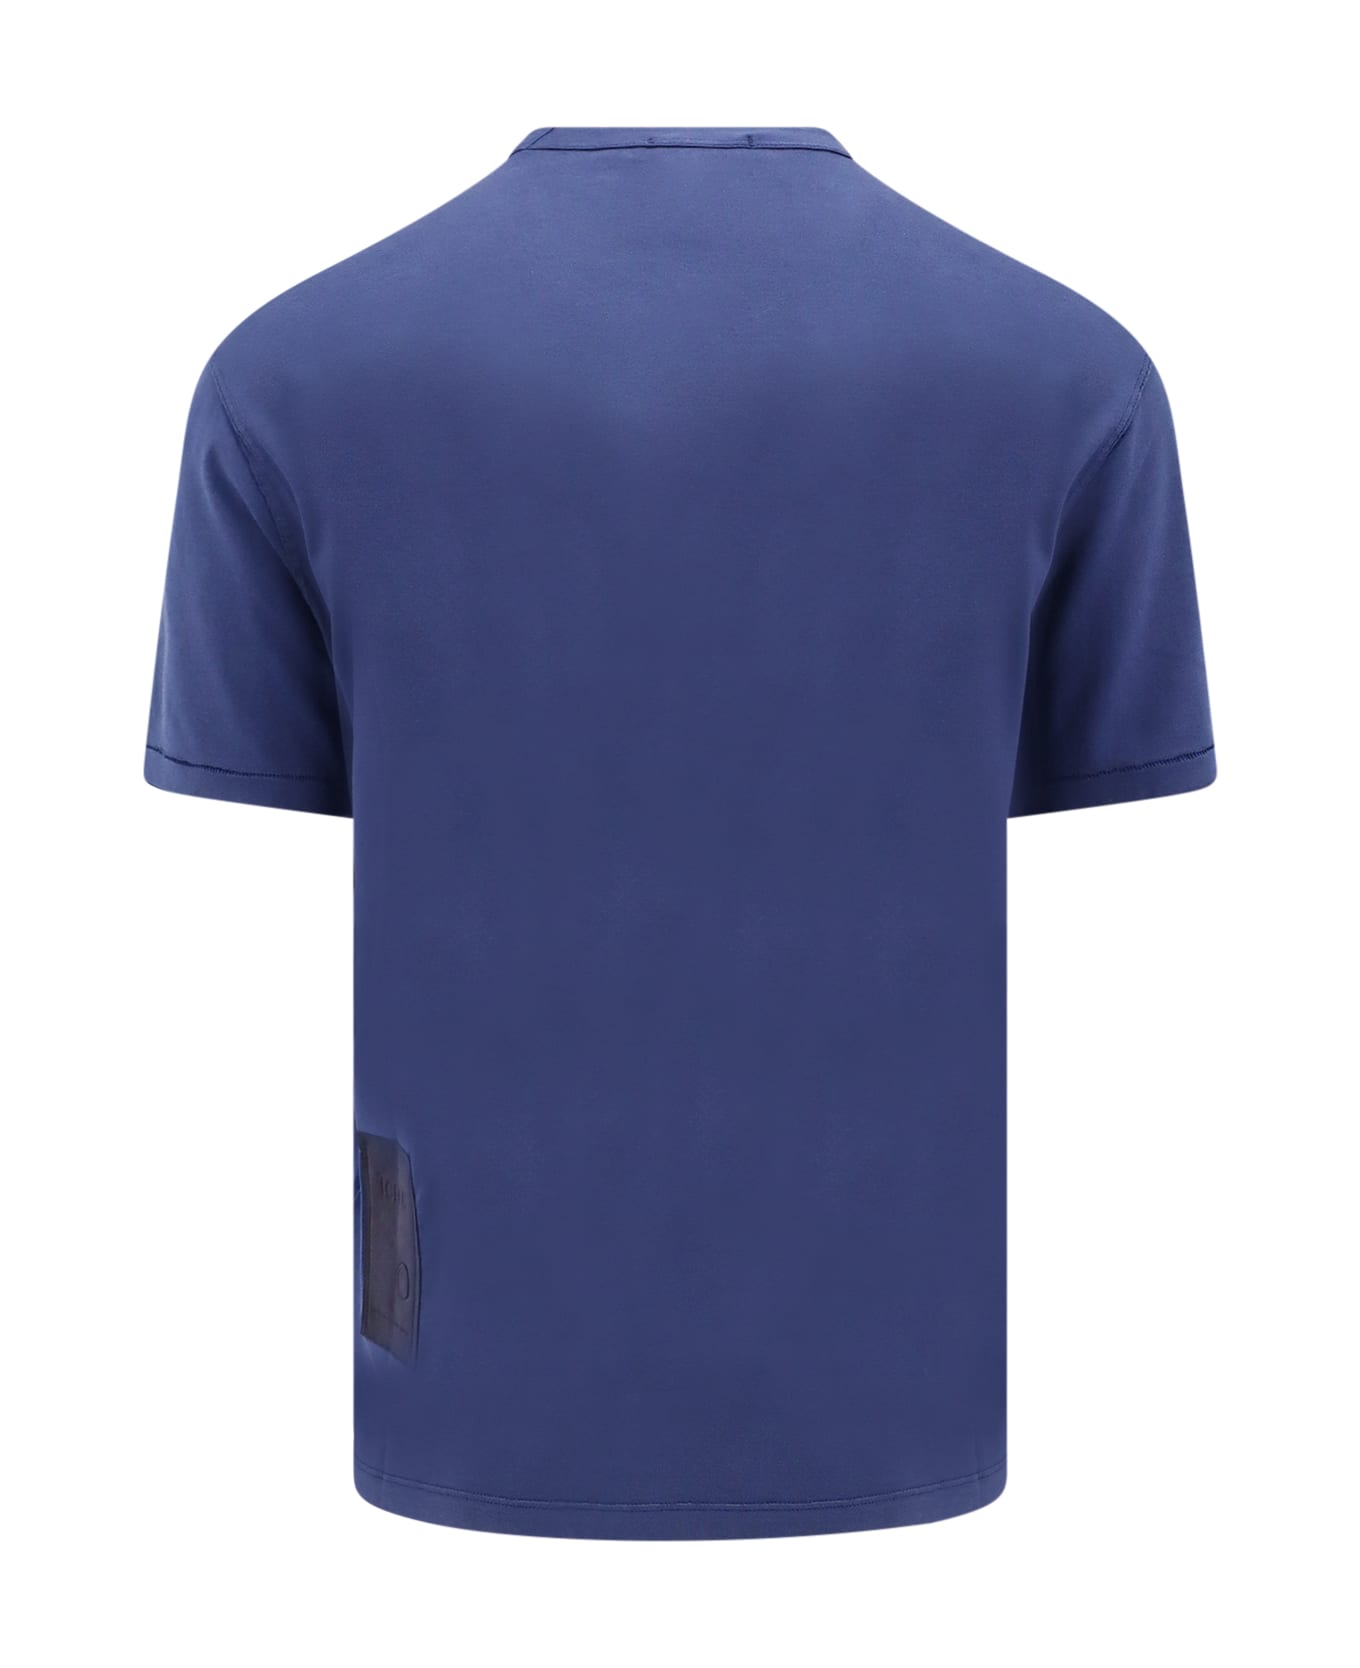 Ten C T-shirt - Blue